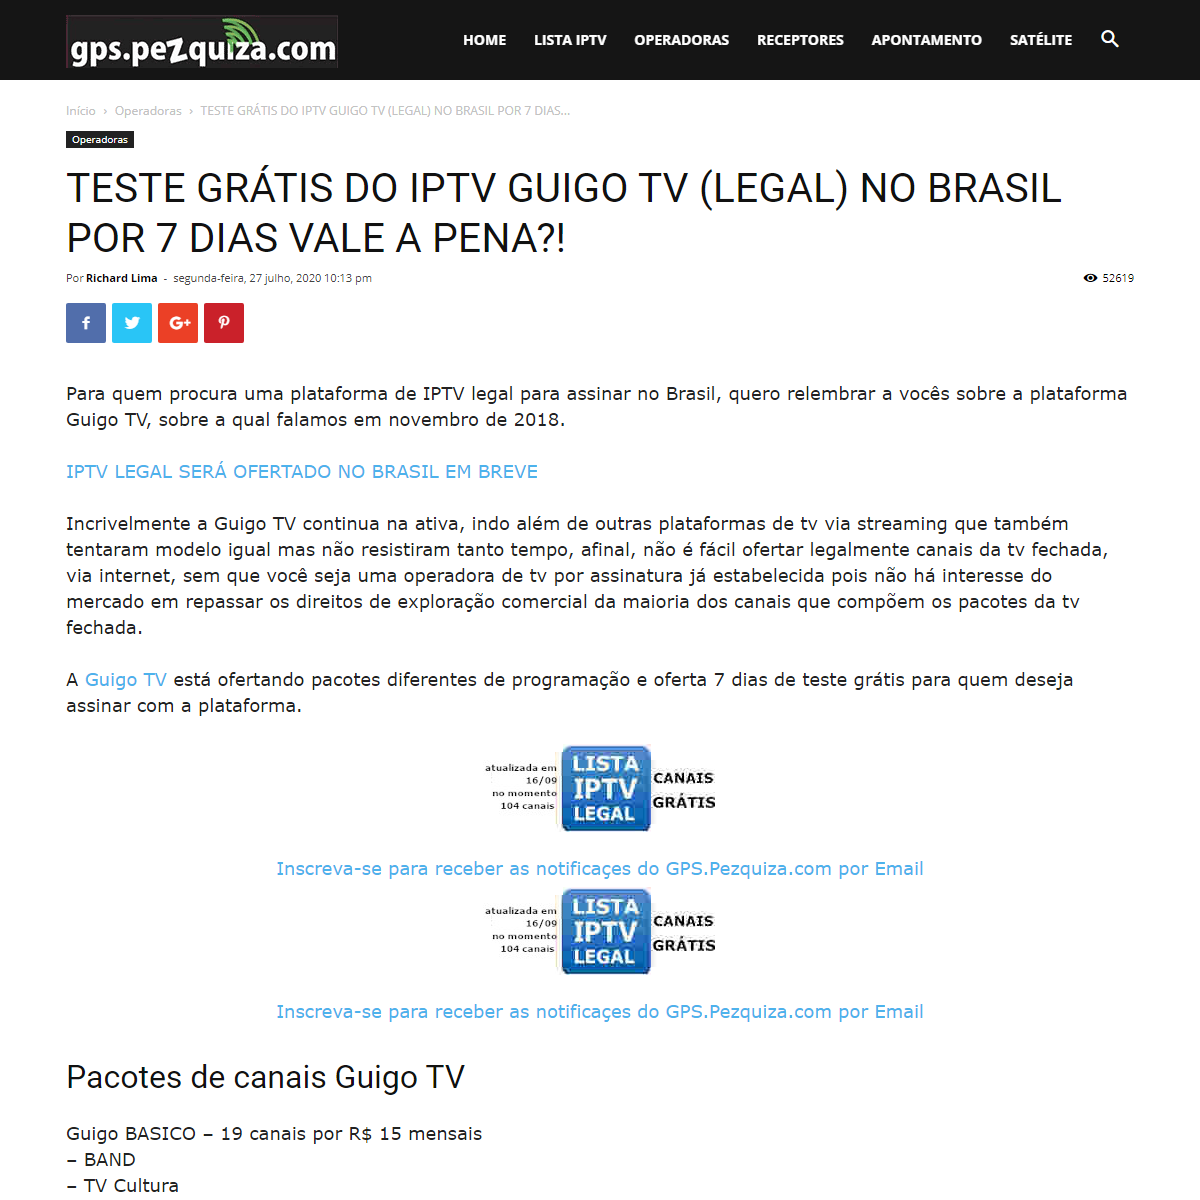 A complete backup of https://gps.pezquiza.com/operadoras-2/teste-gratis-do-iptv-guigo-tv-legal-no-brasil-por-7-dias-vale-a-pena/